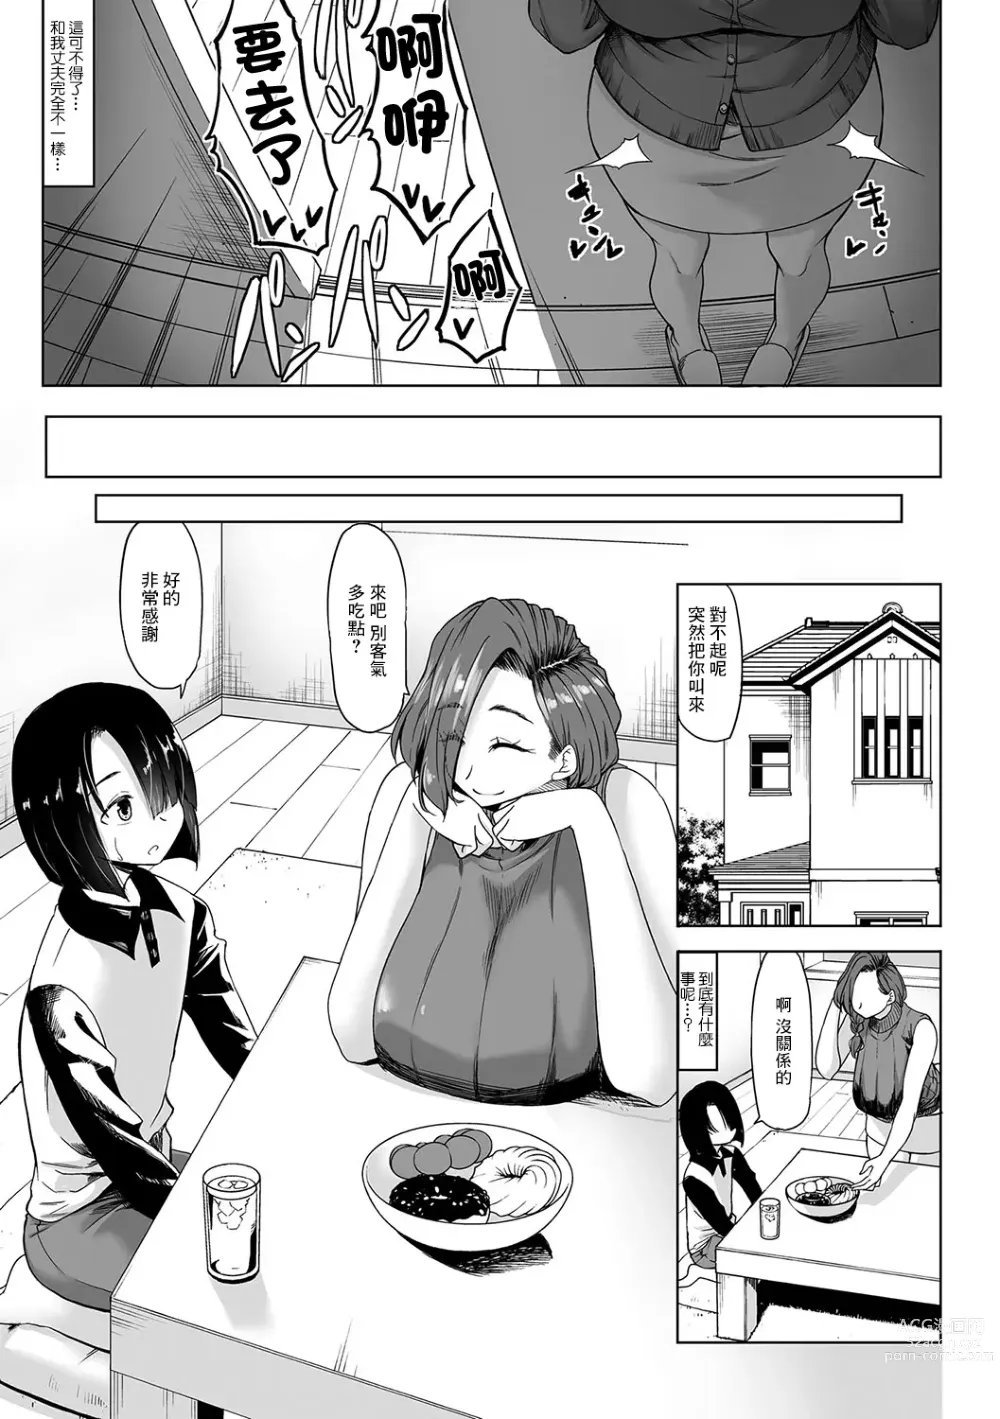 Page 3 of manga A Cup no Kanojo yori J Cup no Kuro Gal no Hou ga Yoi yo ne? After